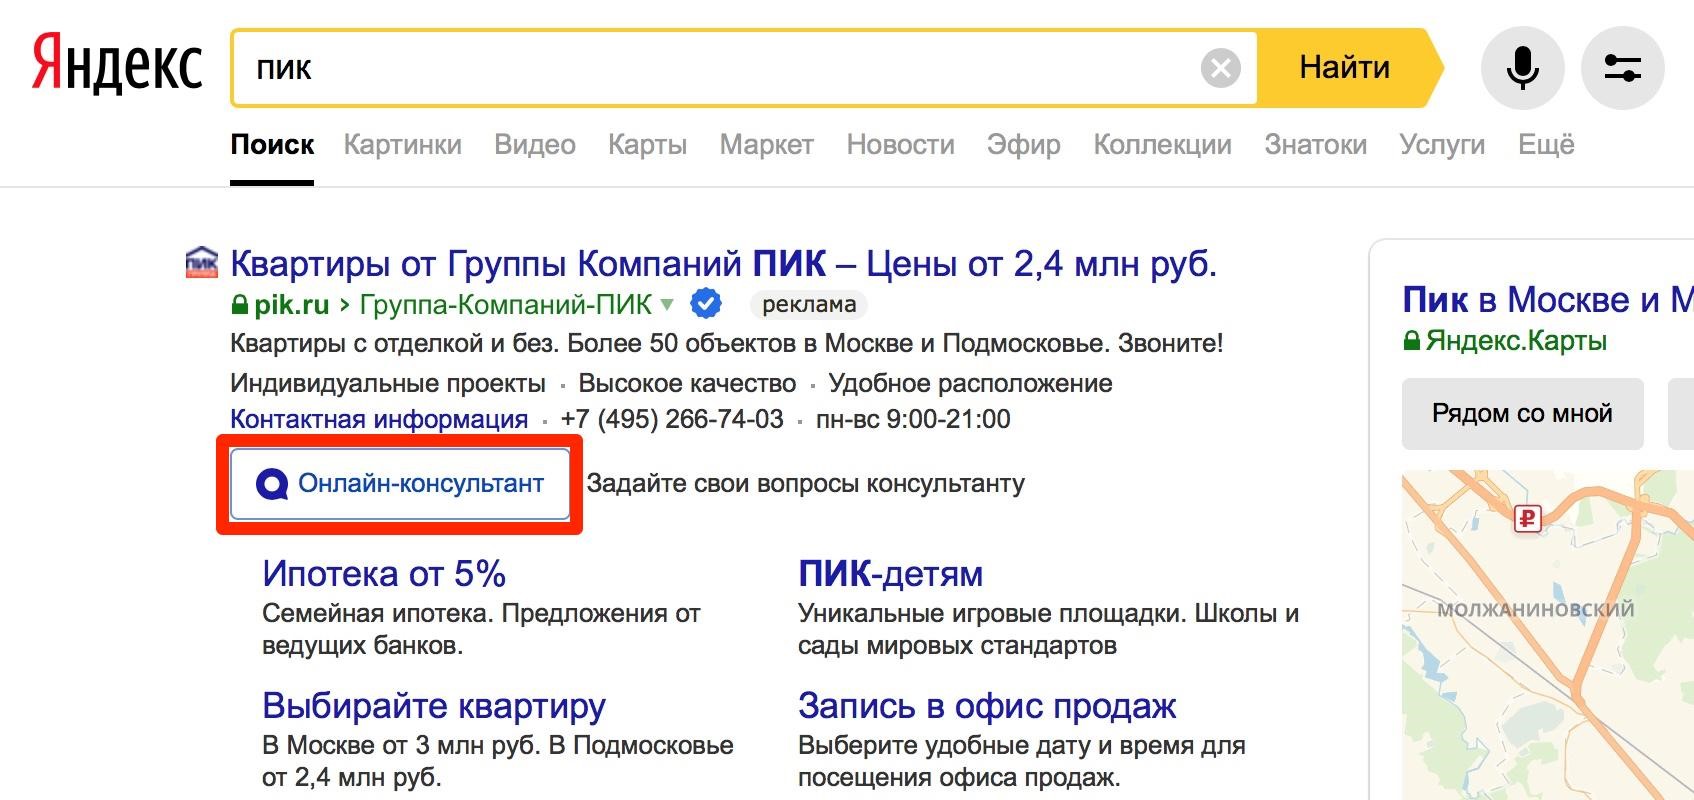 Найти по фото в Яндексе местоположения. Установить местоположение в яндексе